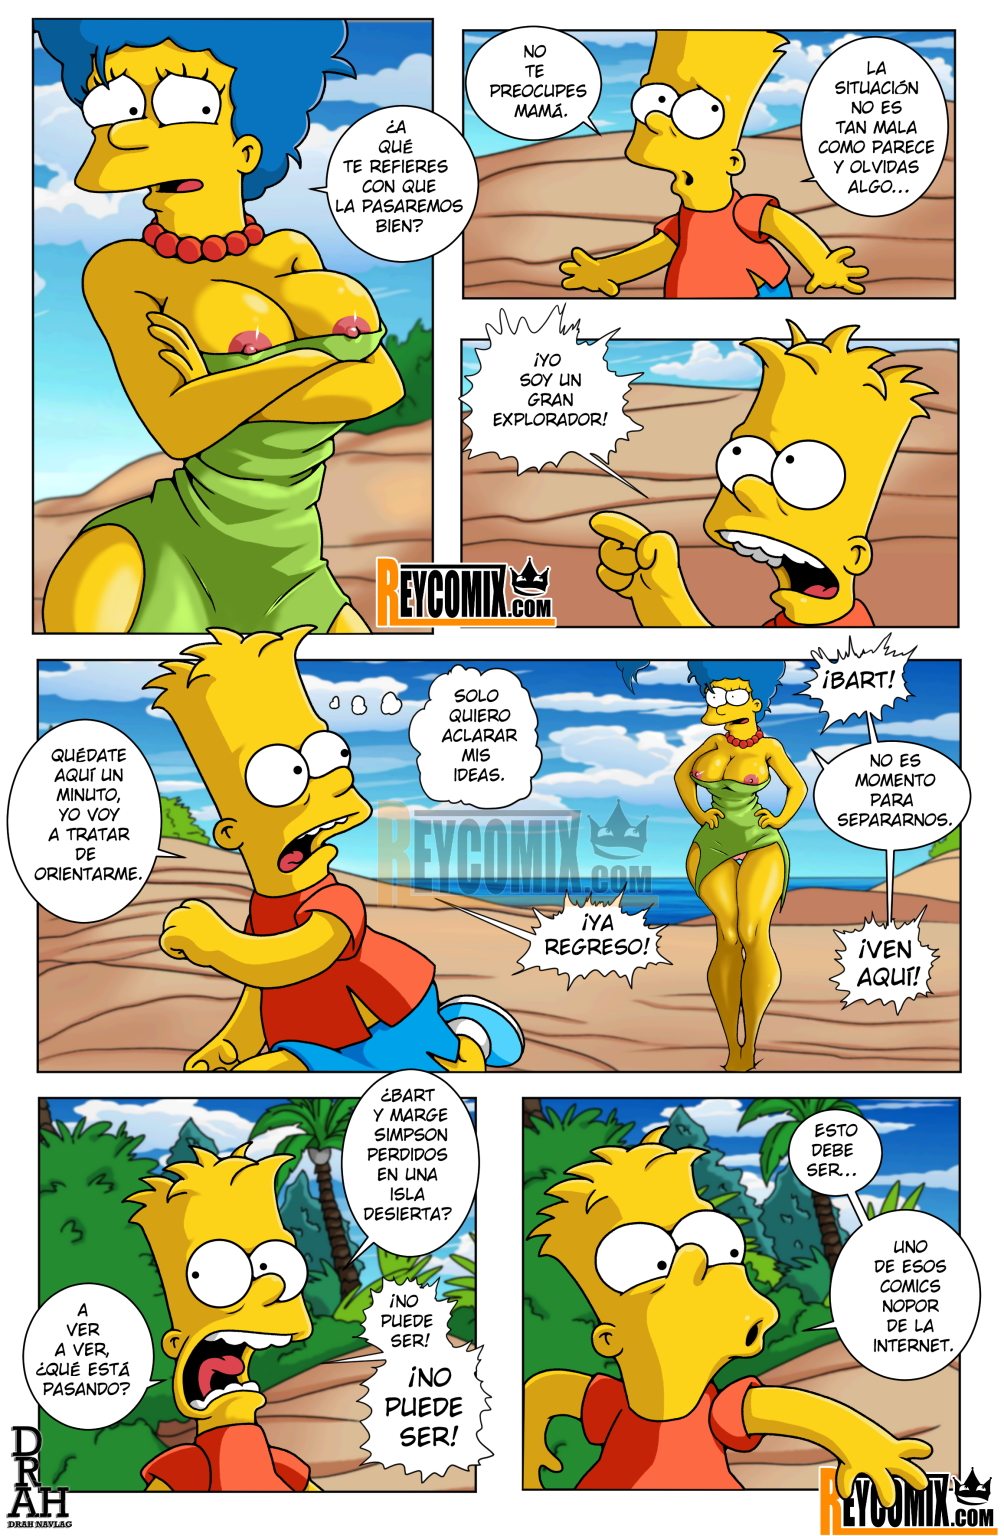 Paraíso – Os Simpsons by Drah (Spanish)